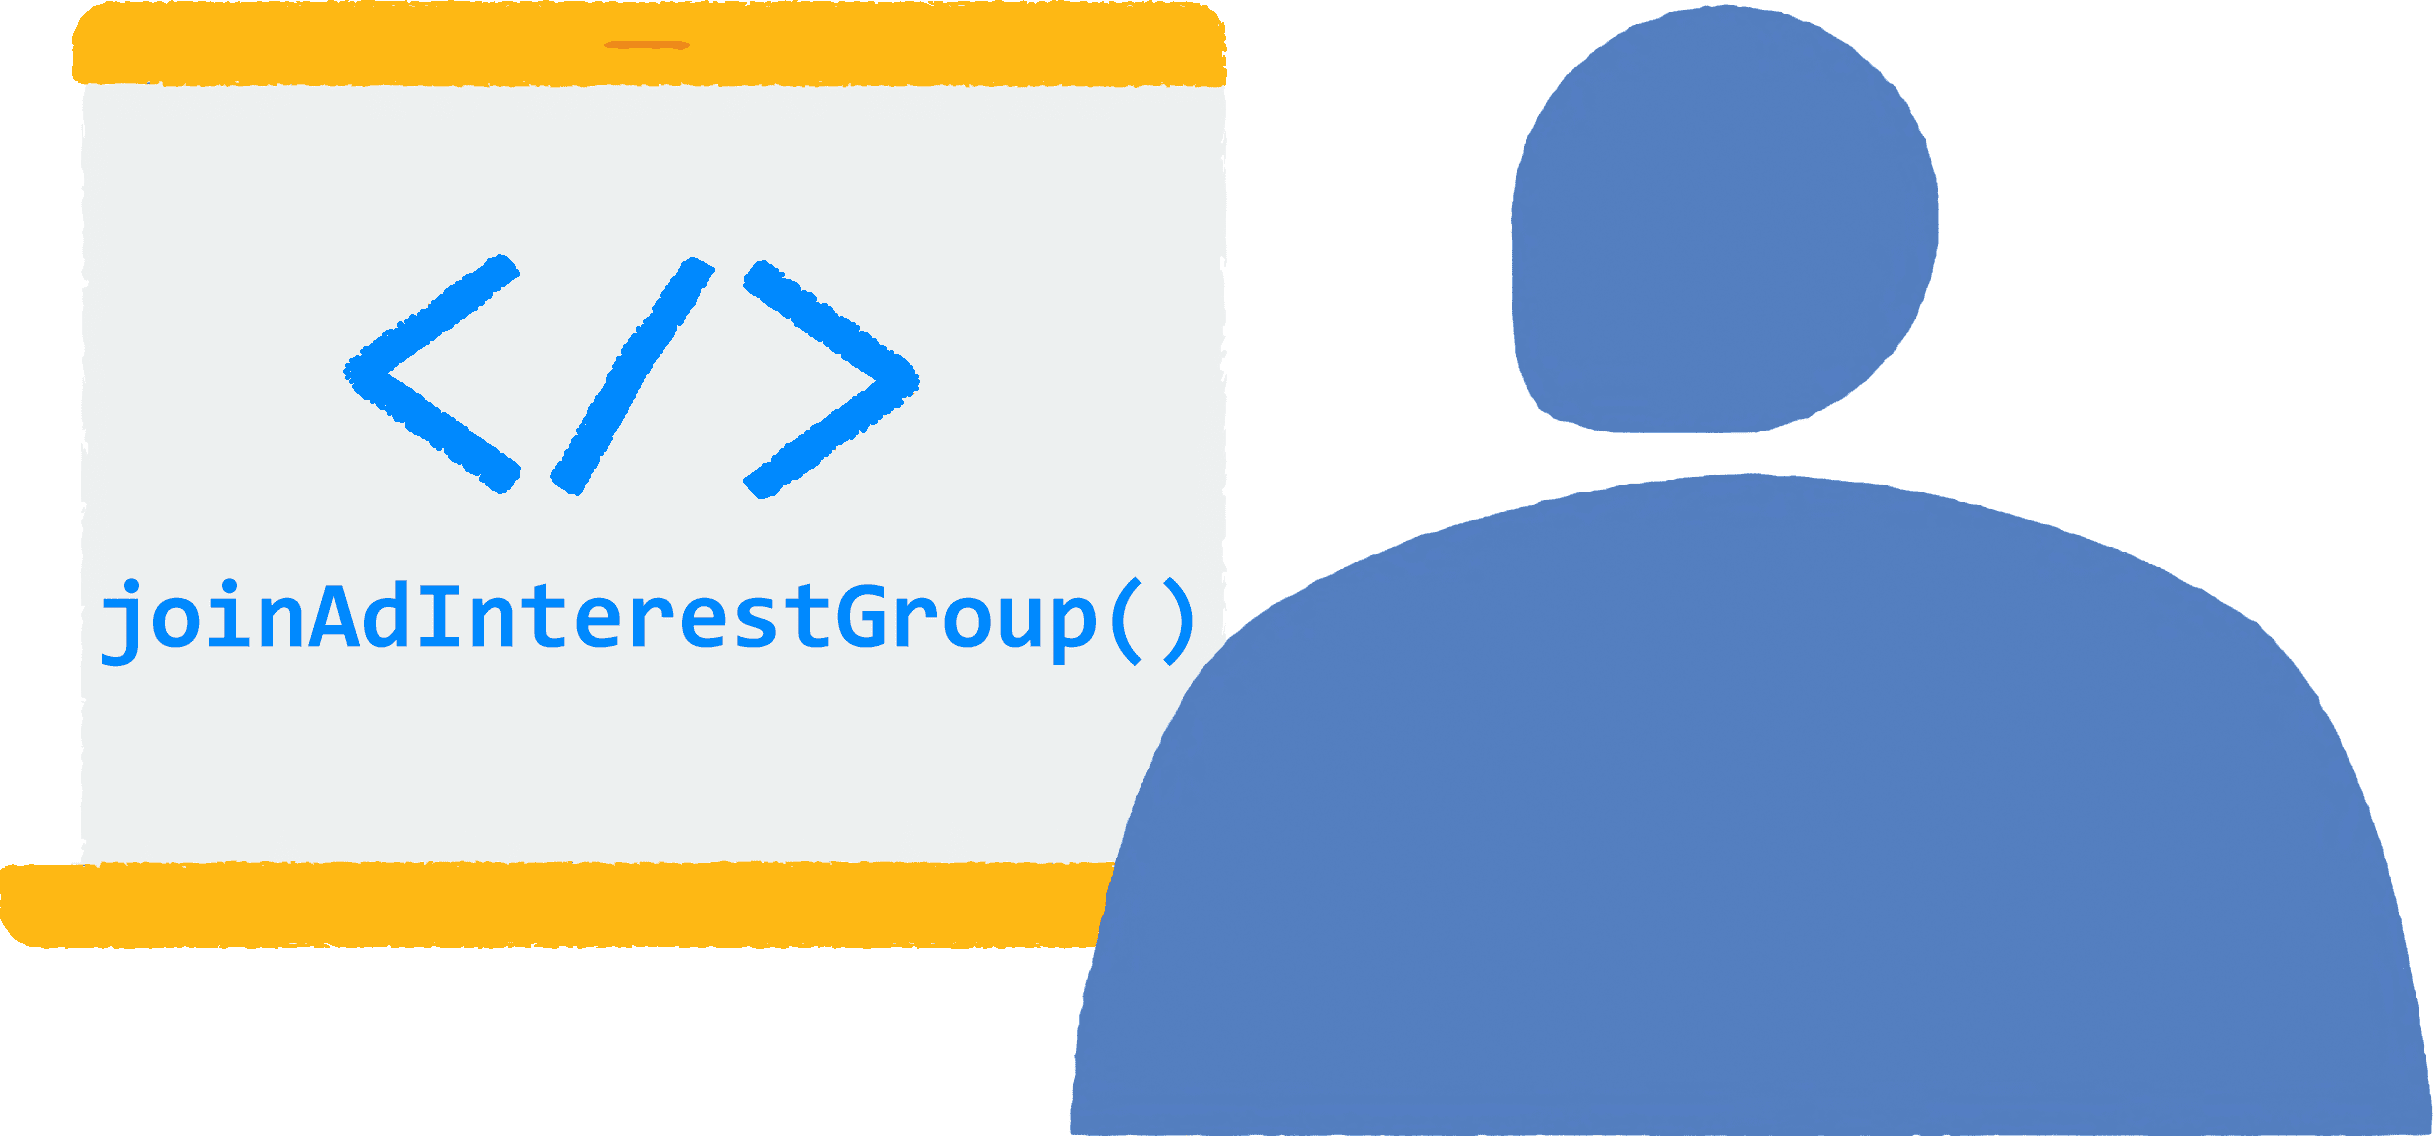 משתמש פותח דפדפן במחשב נייד ומבקר באתר כלשהו. קוד ה-JavaScript
  להצטרפות לקבוצות של תחומי עניין של מודעות פועל בדפדפן.